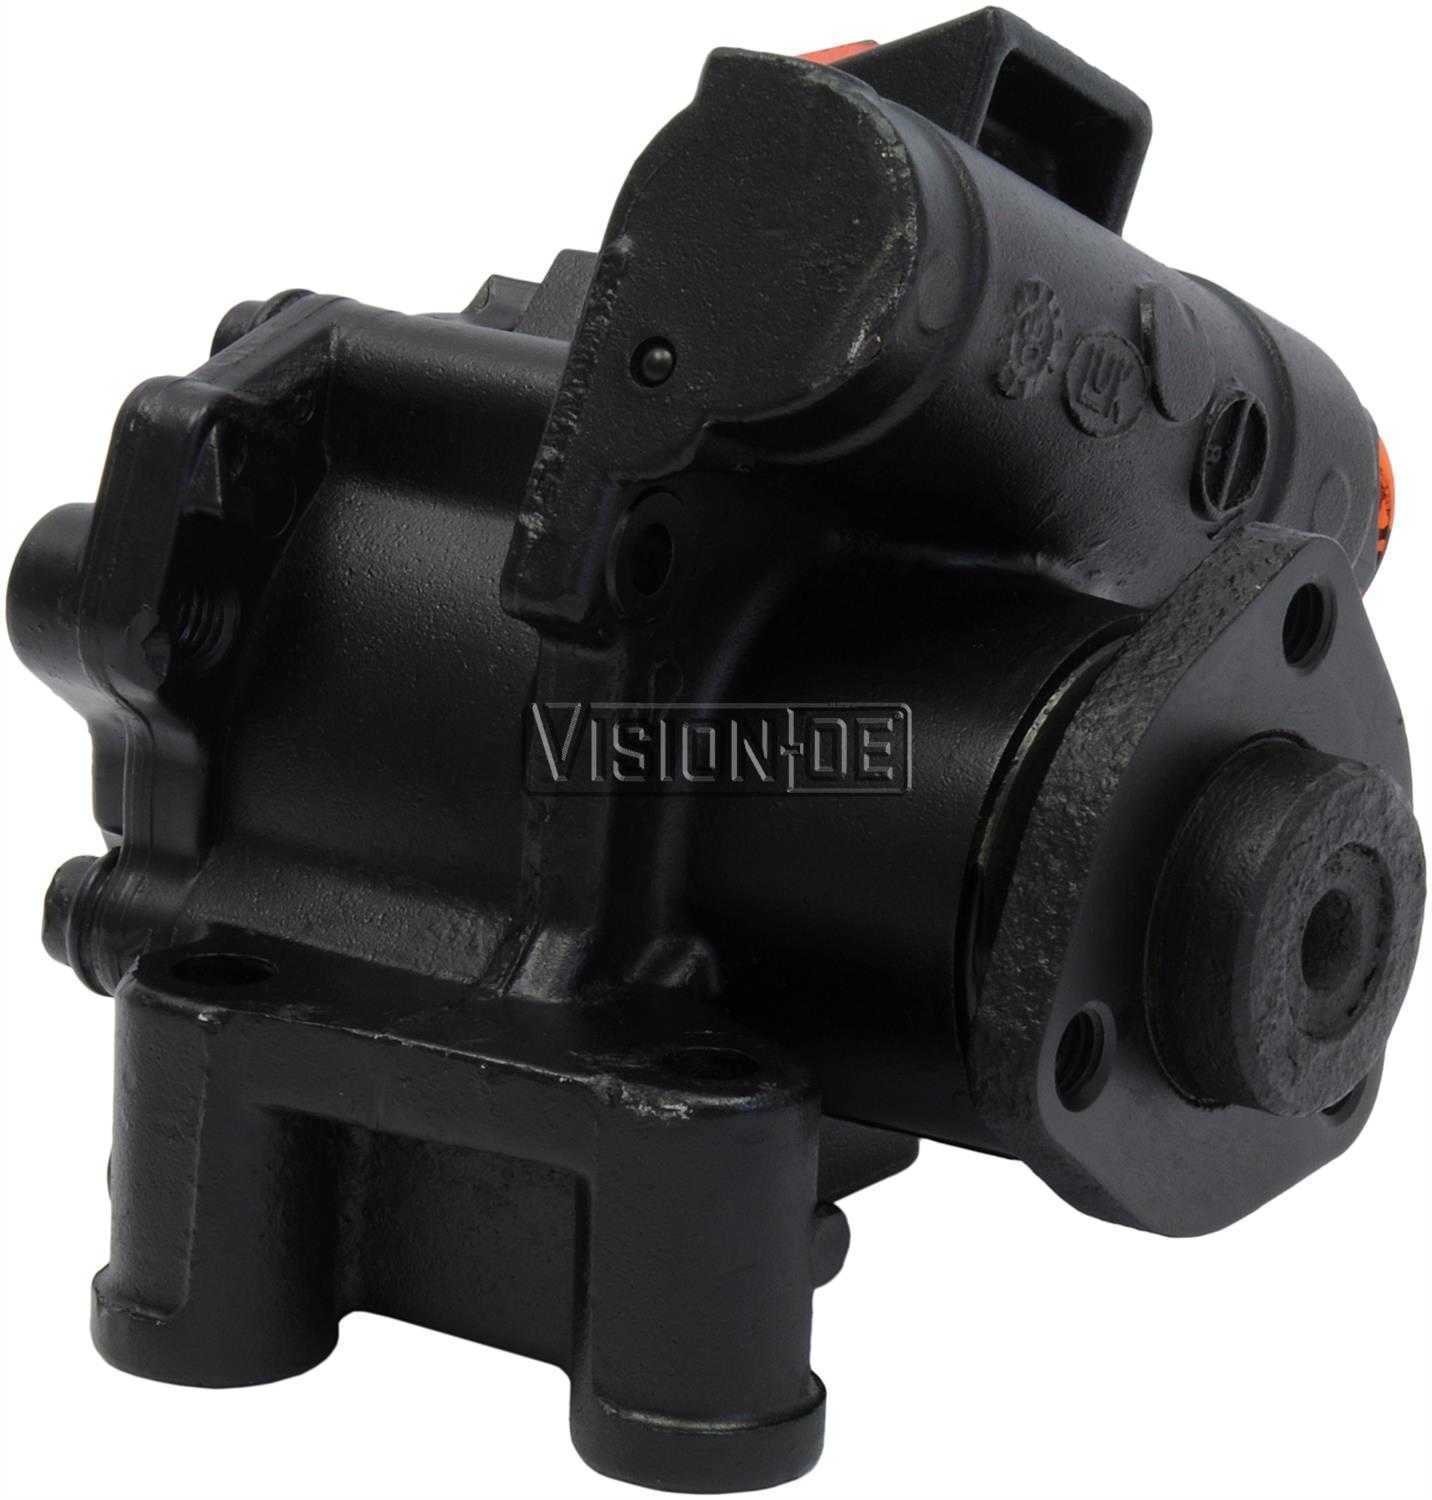 VISION-OE - Reman Power Steering Pump - VOE 990-0851